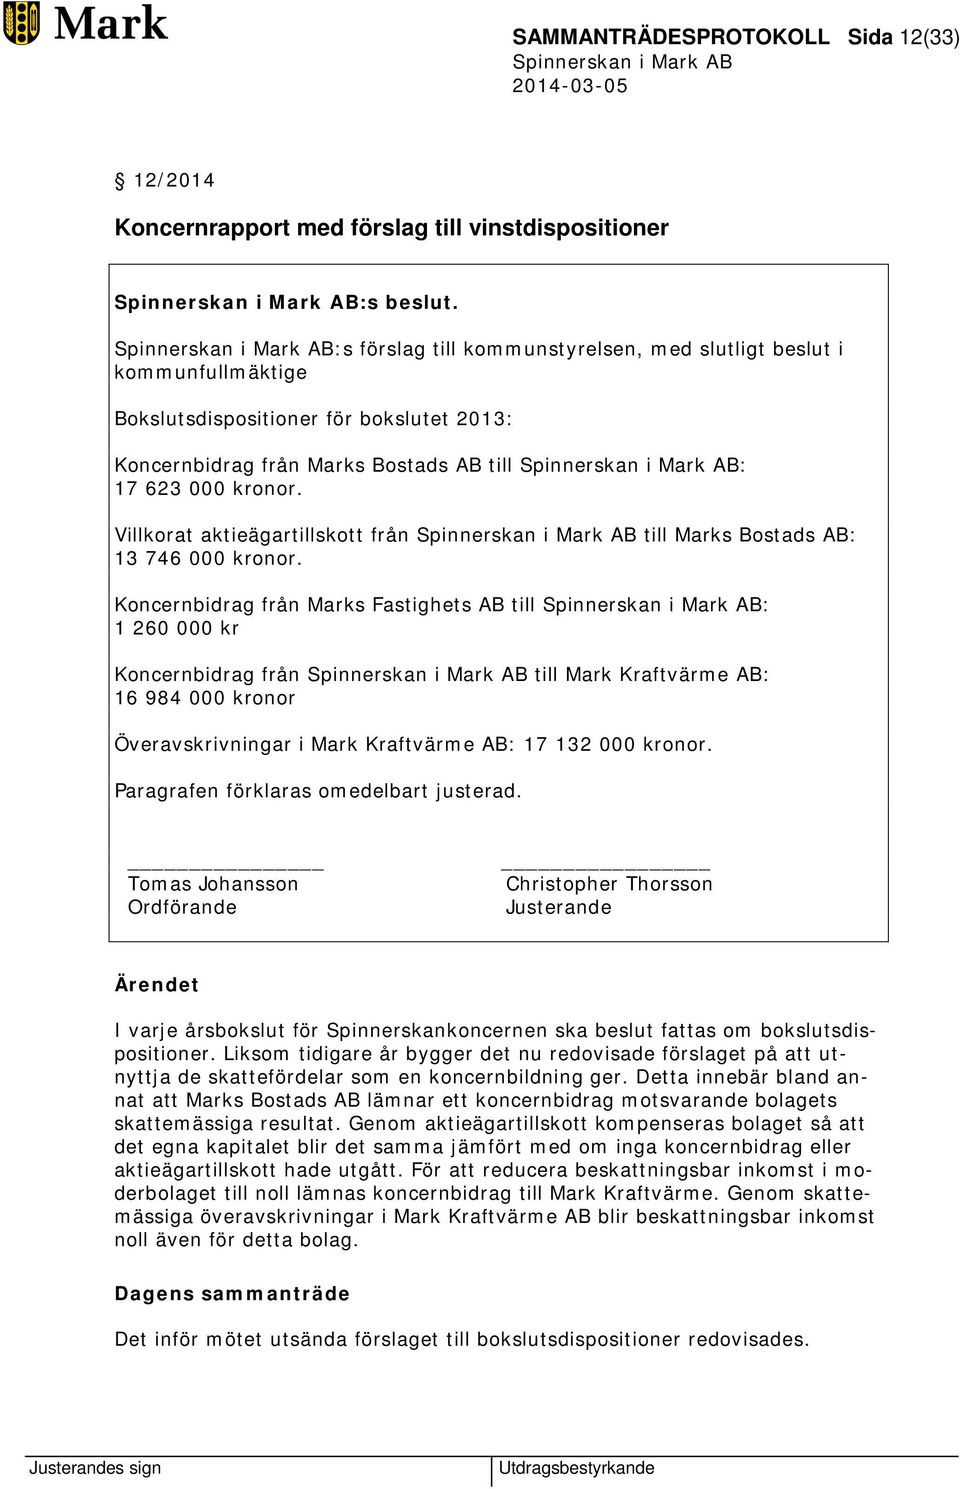 Villkorat aktieägartillskott från till Marks Bostads AB: 13 746 000 kronor.